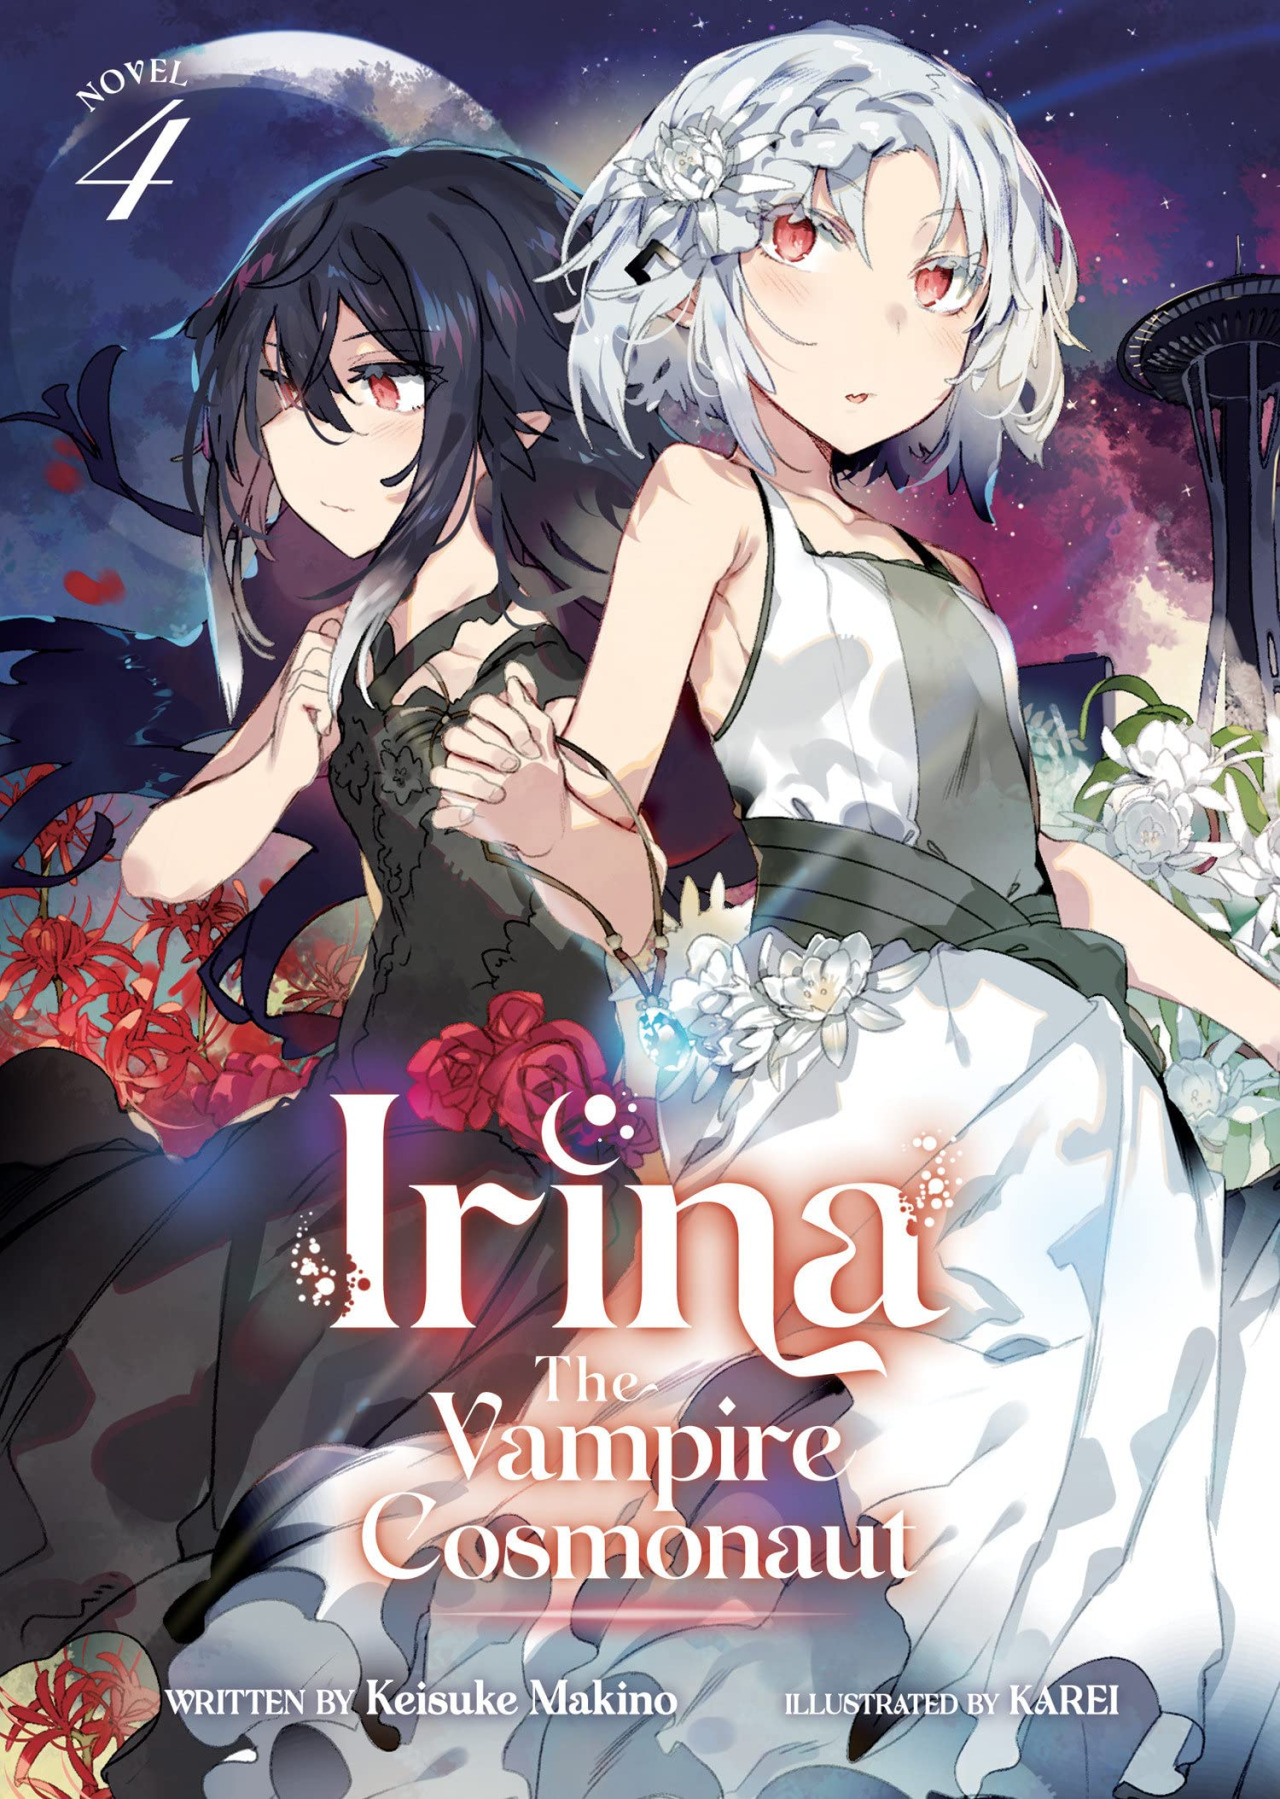 Irina the vampire